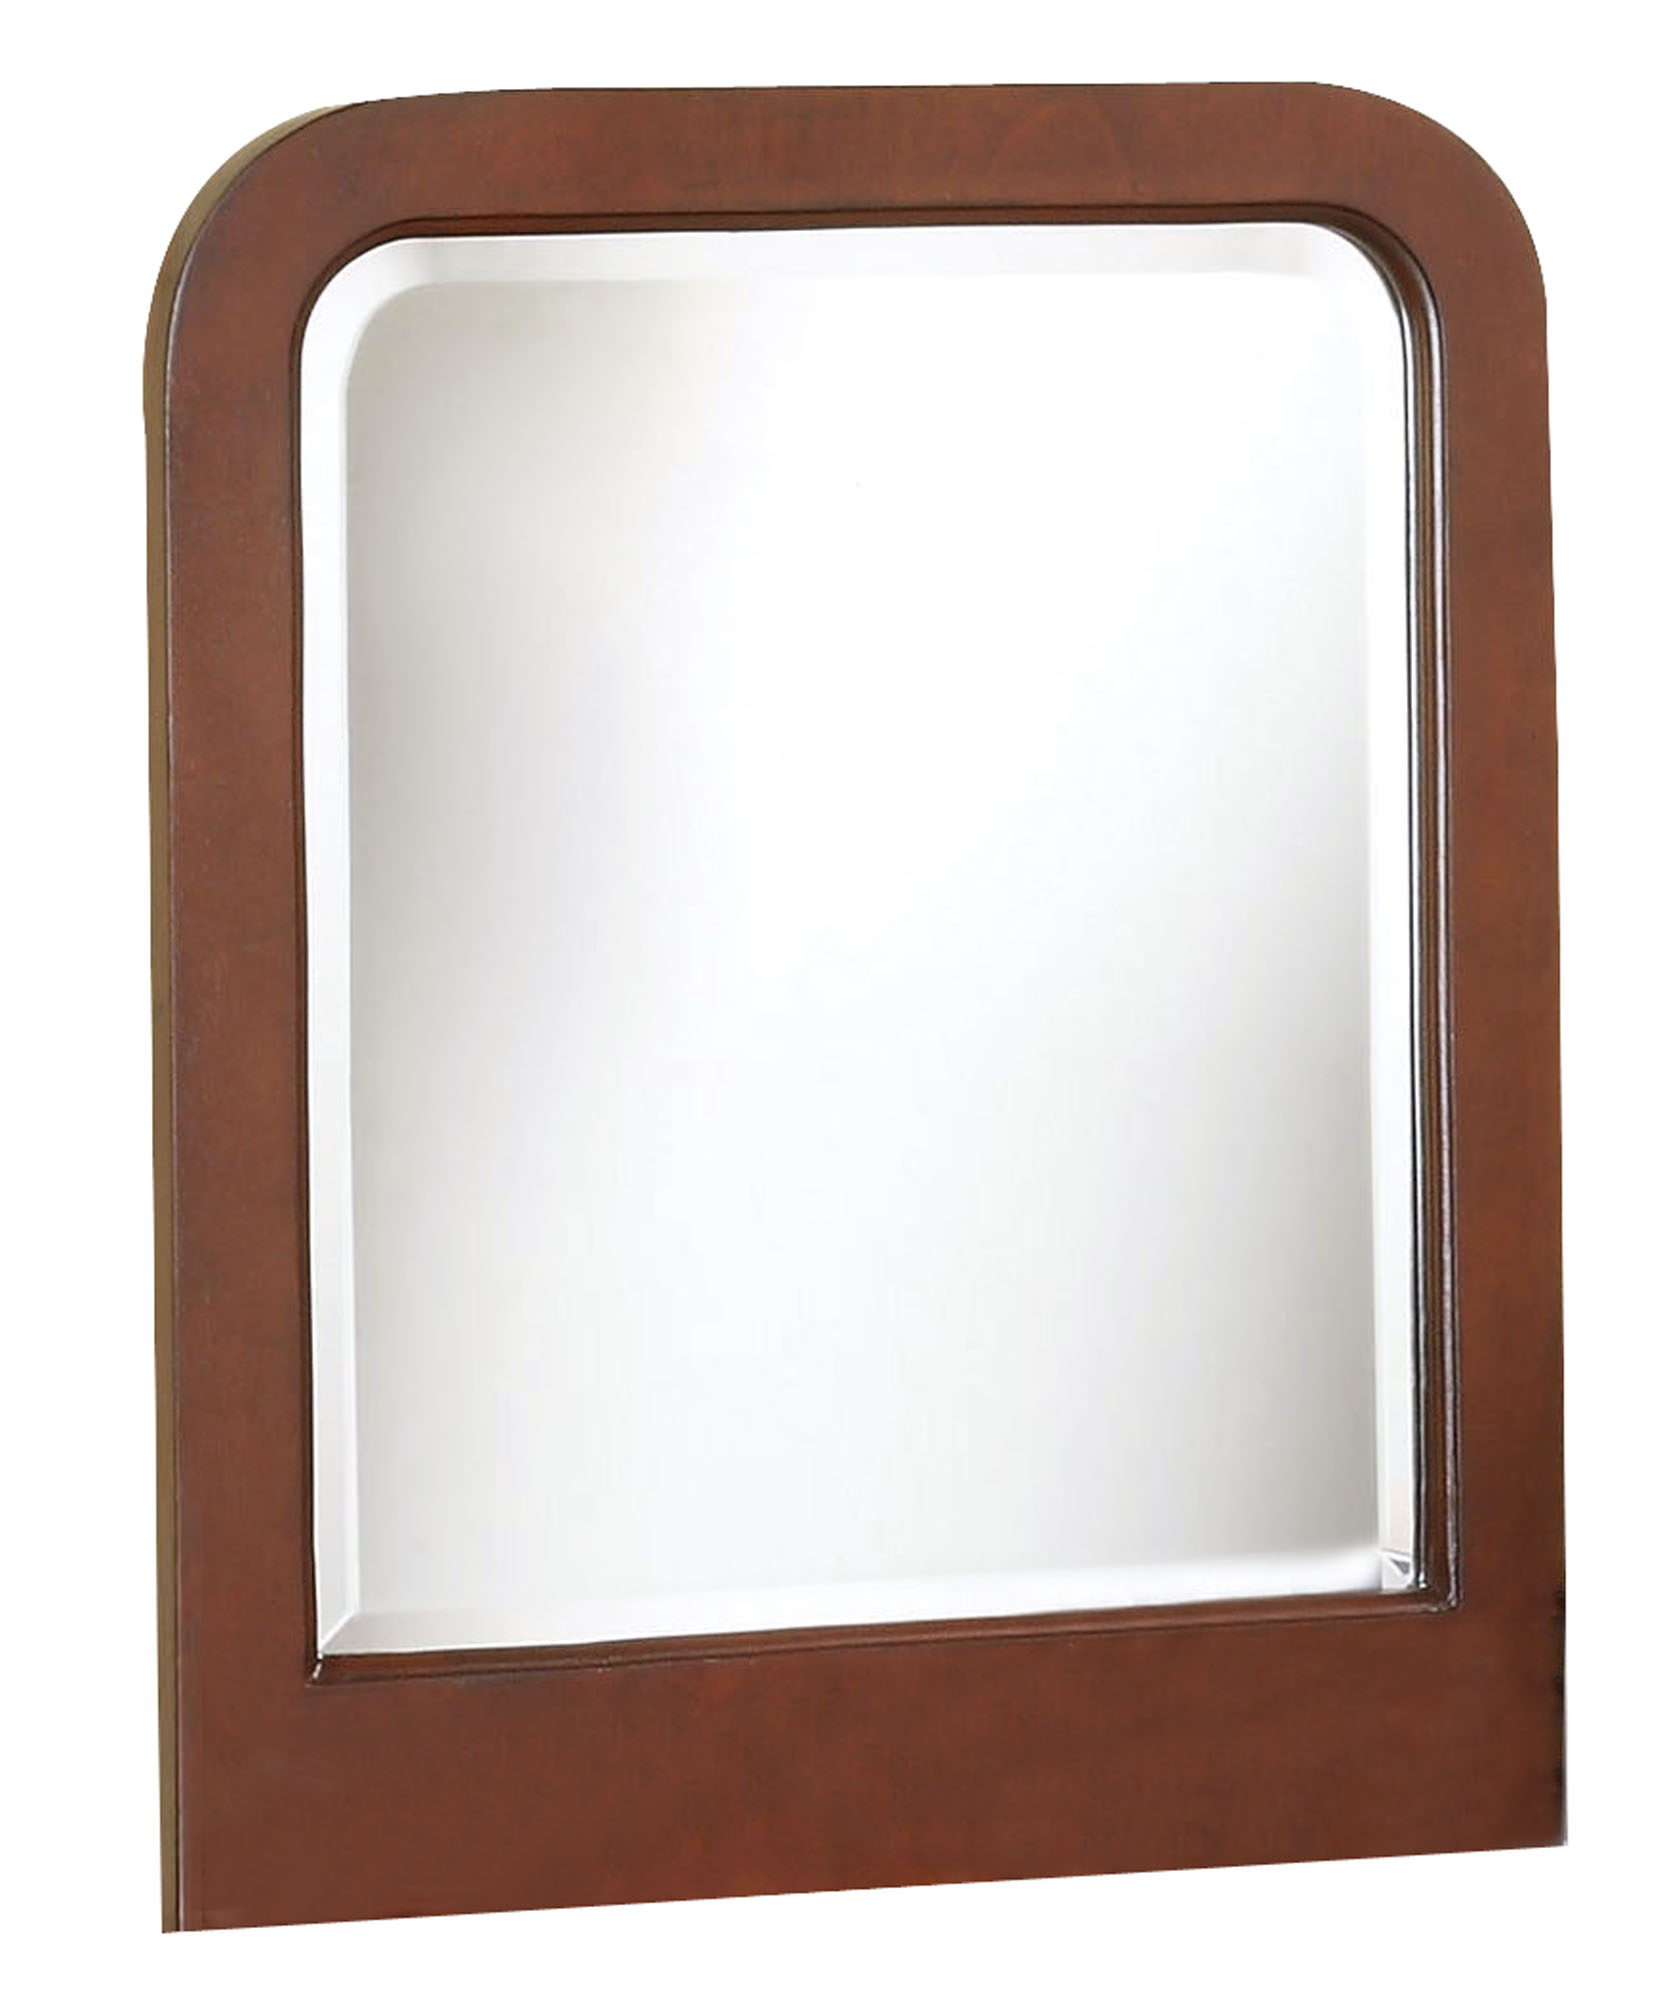 1" X 25" X 24" Brown Wood Vanity Mirror